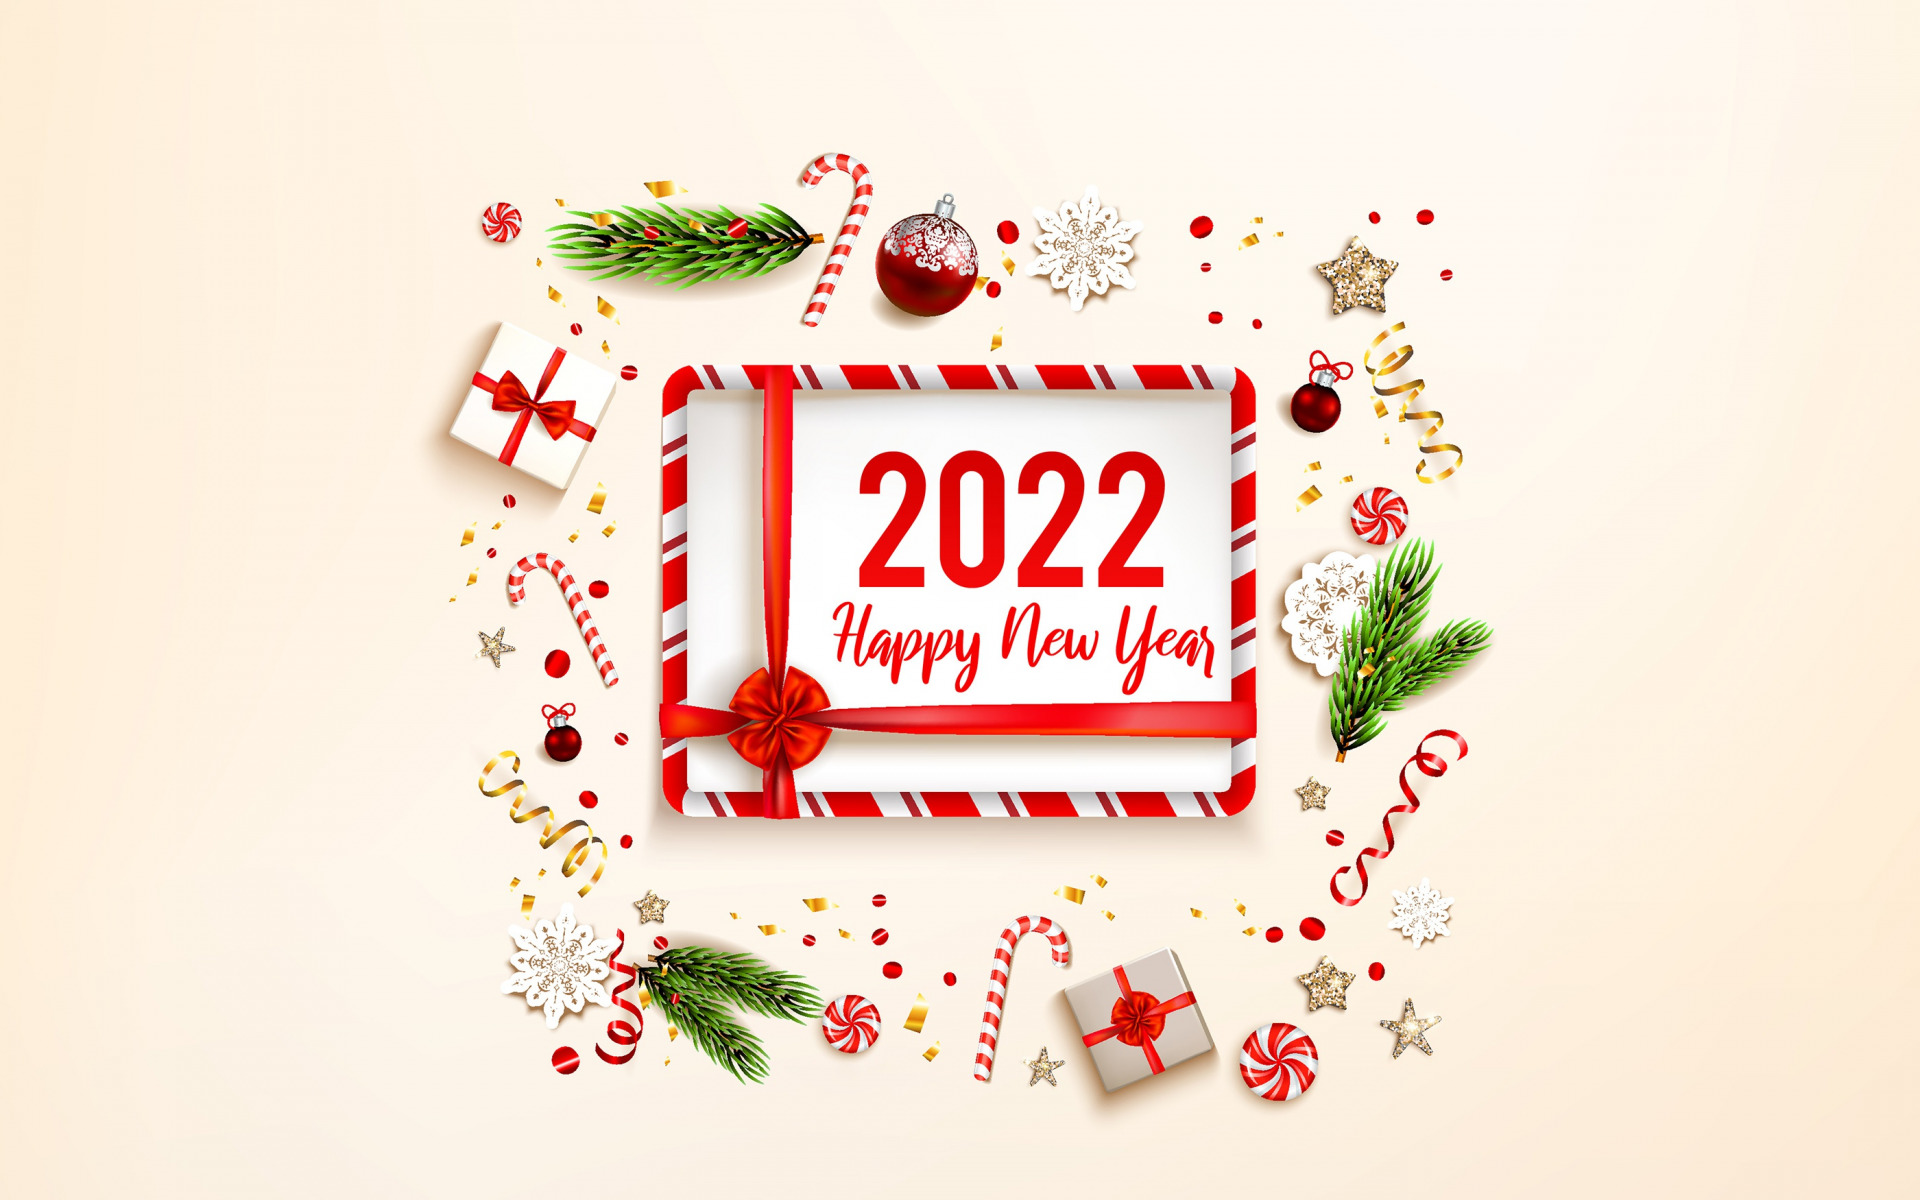 Новый год , Рождество , Новый год 2022 , Рождество 2022 , Новый год фон , Новый год фон 2022 , новый год обои , новый год обои на рабочий стол , новый год обои 2022 , новый год картинки , новый год 2022 картинки , зима , снег , Christmas , winter , s